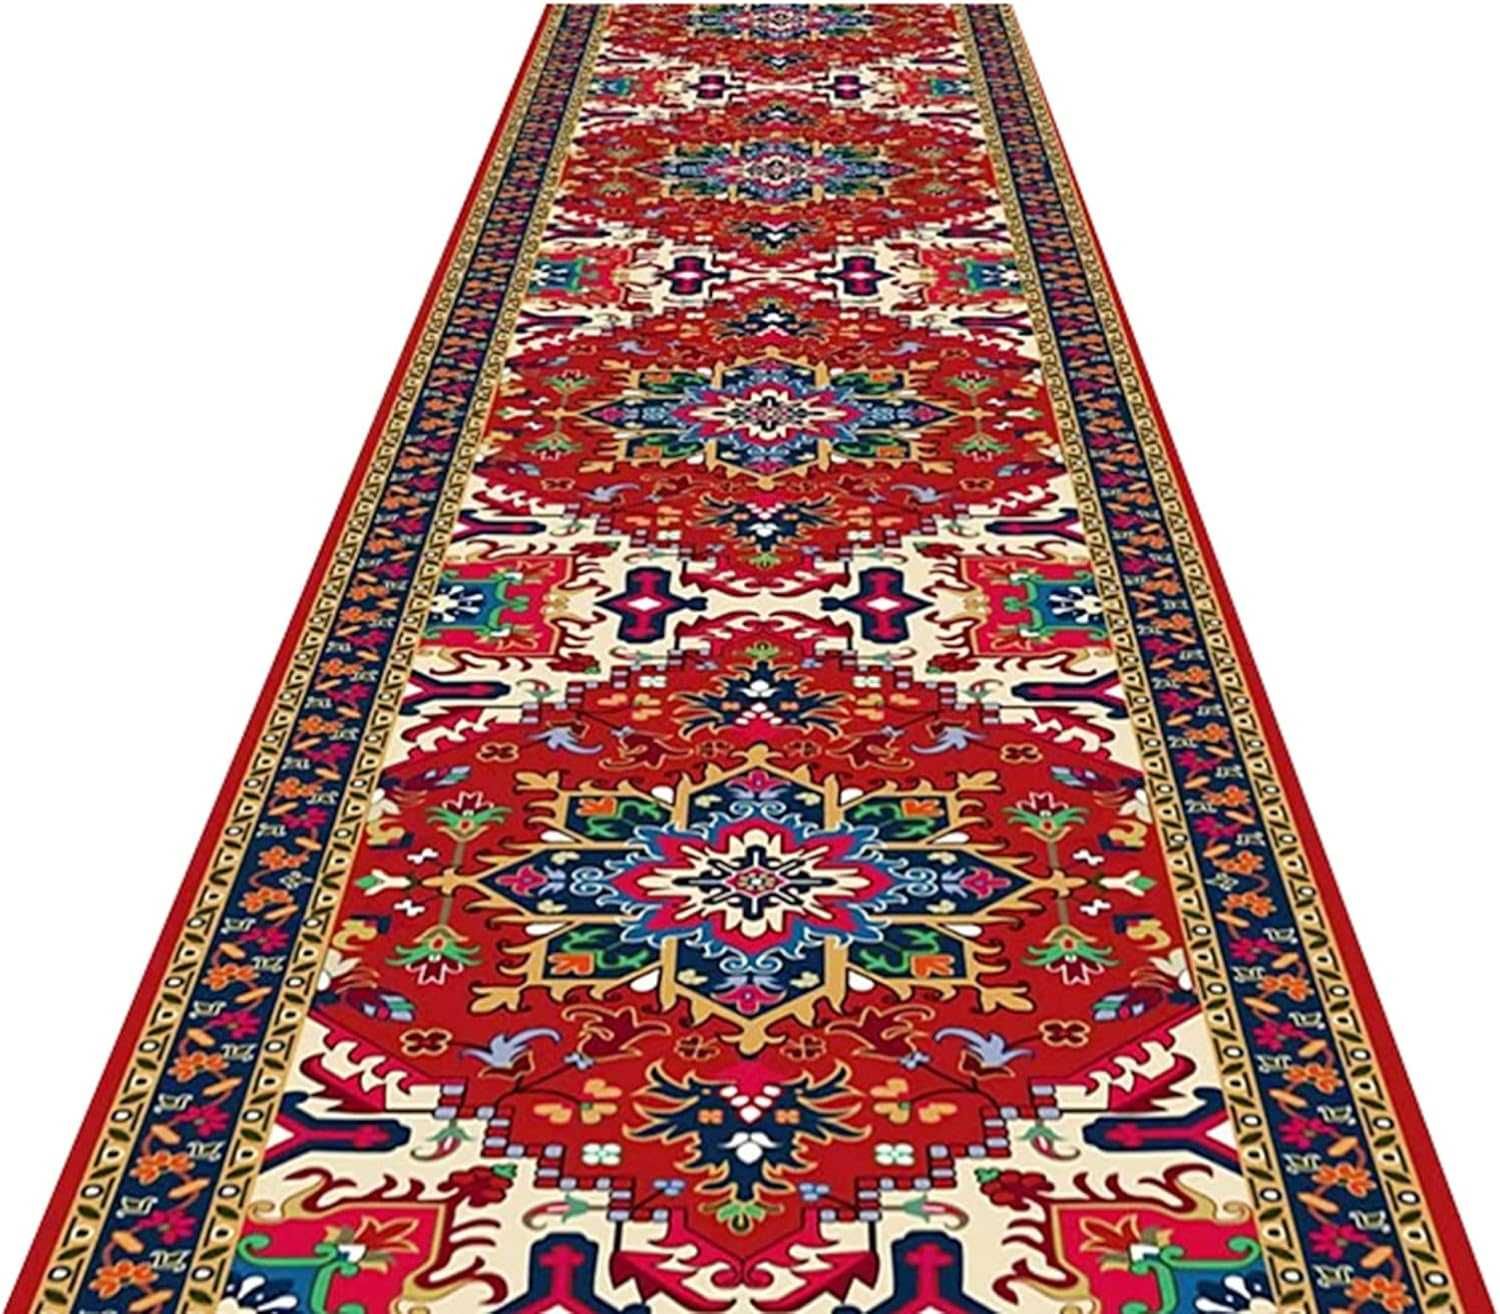 Dywan czerwony, tradycyjny dywan z możliwością prania 80x500cm